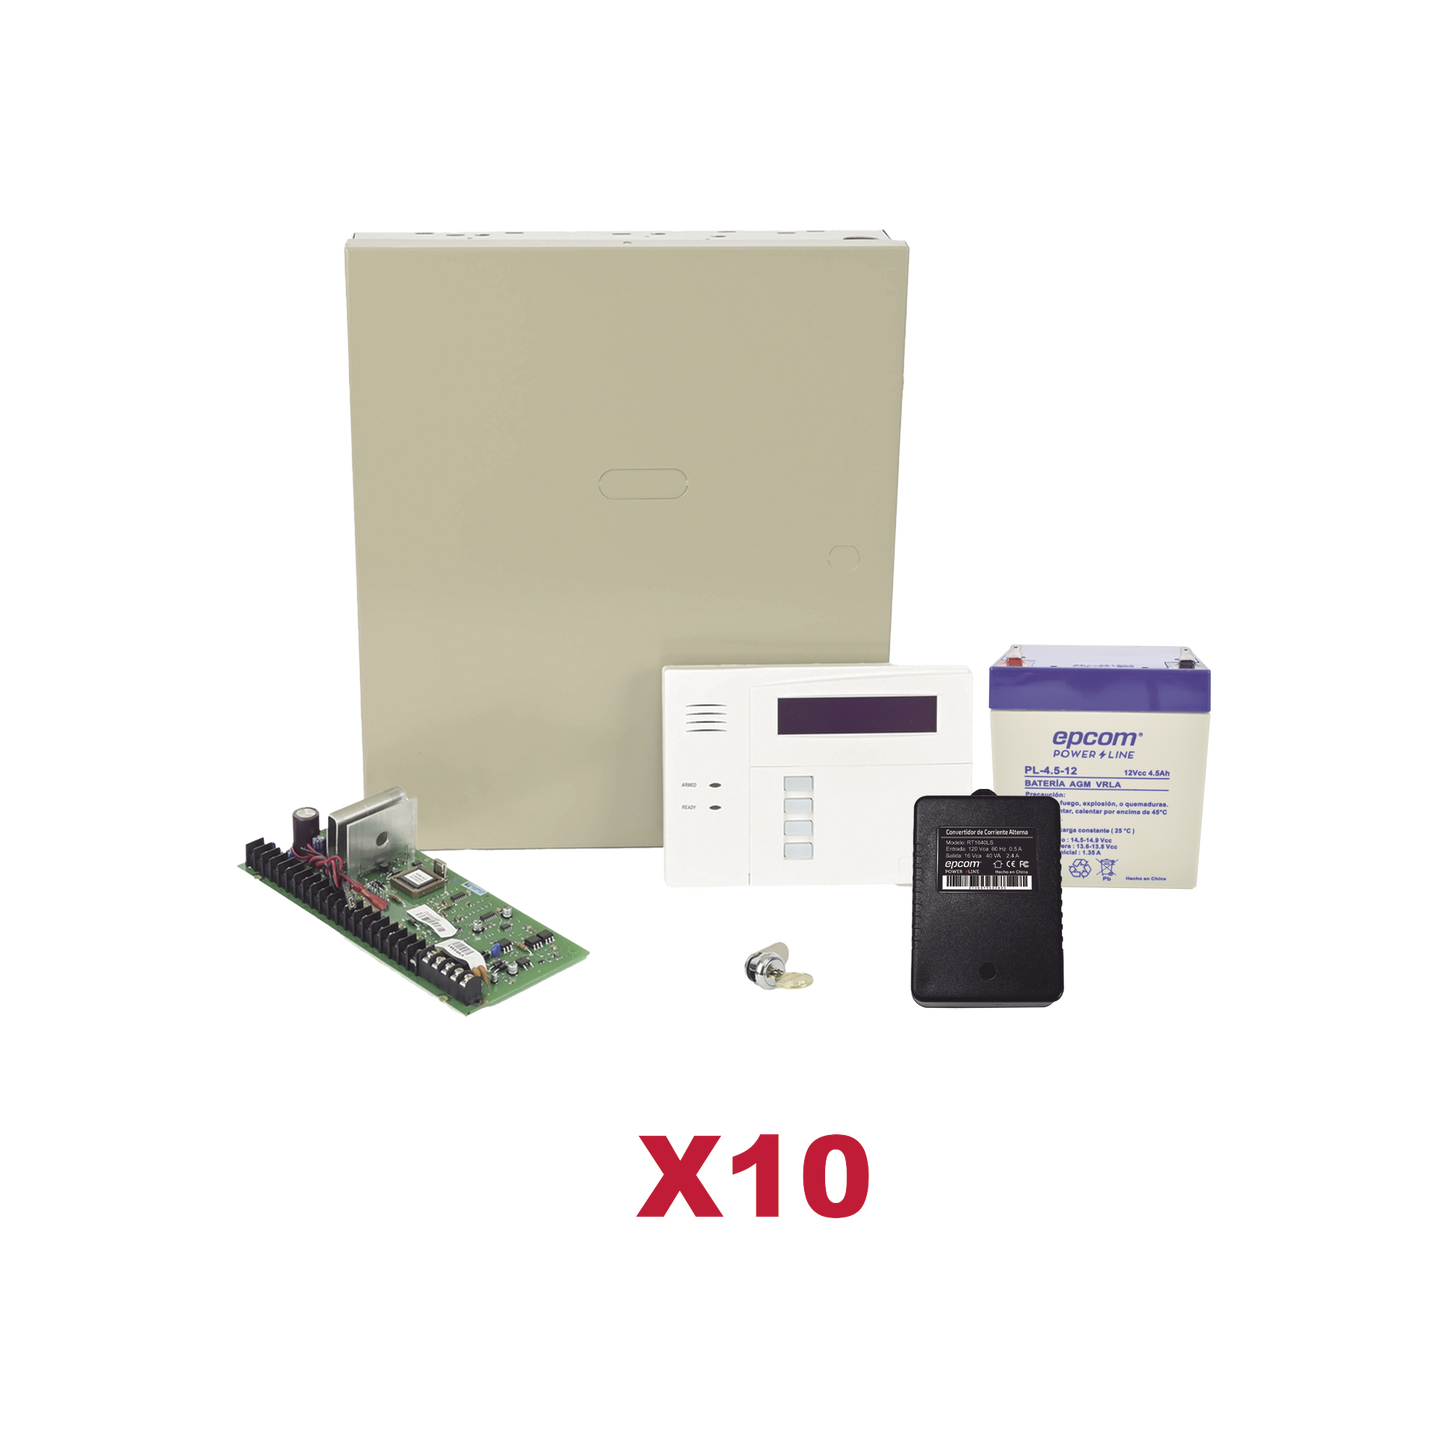 Kit de 10 Paneles de Alarma VISTA48 con Batería y Transformador